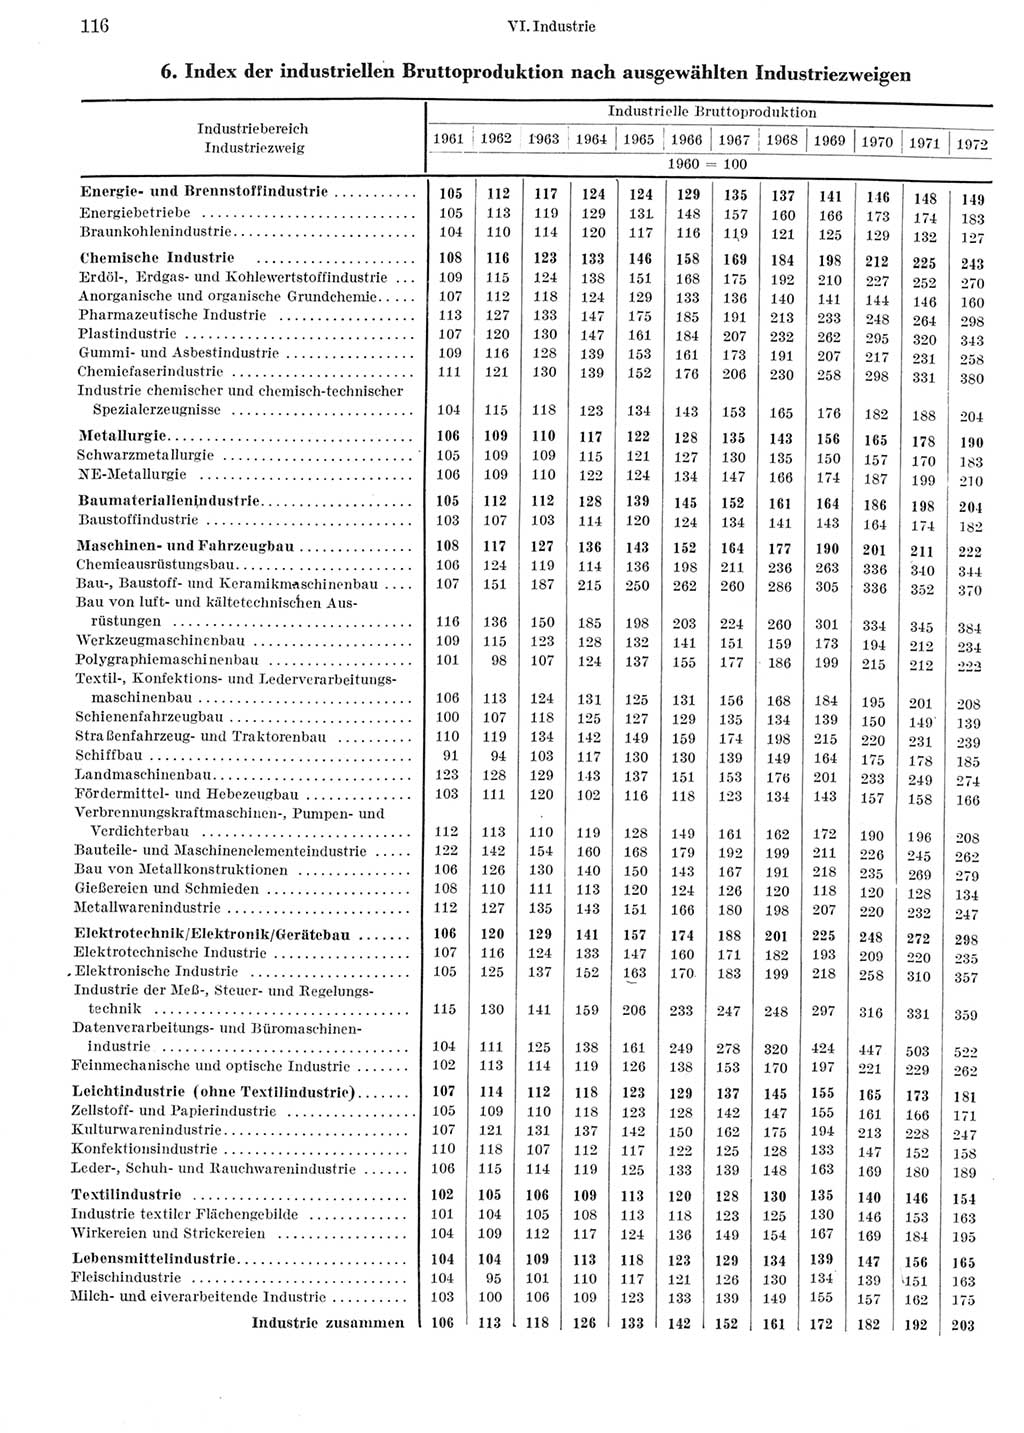 Statistisches Jahrbuch der Deutschen Demokratischen Republik (DDR) 1973, Seite 116 (Stat. Jb. DDR 1973, S. 116)